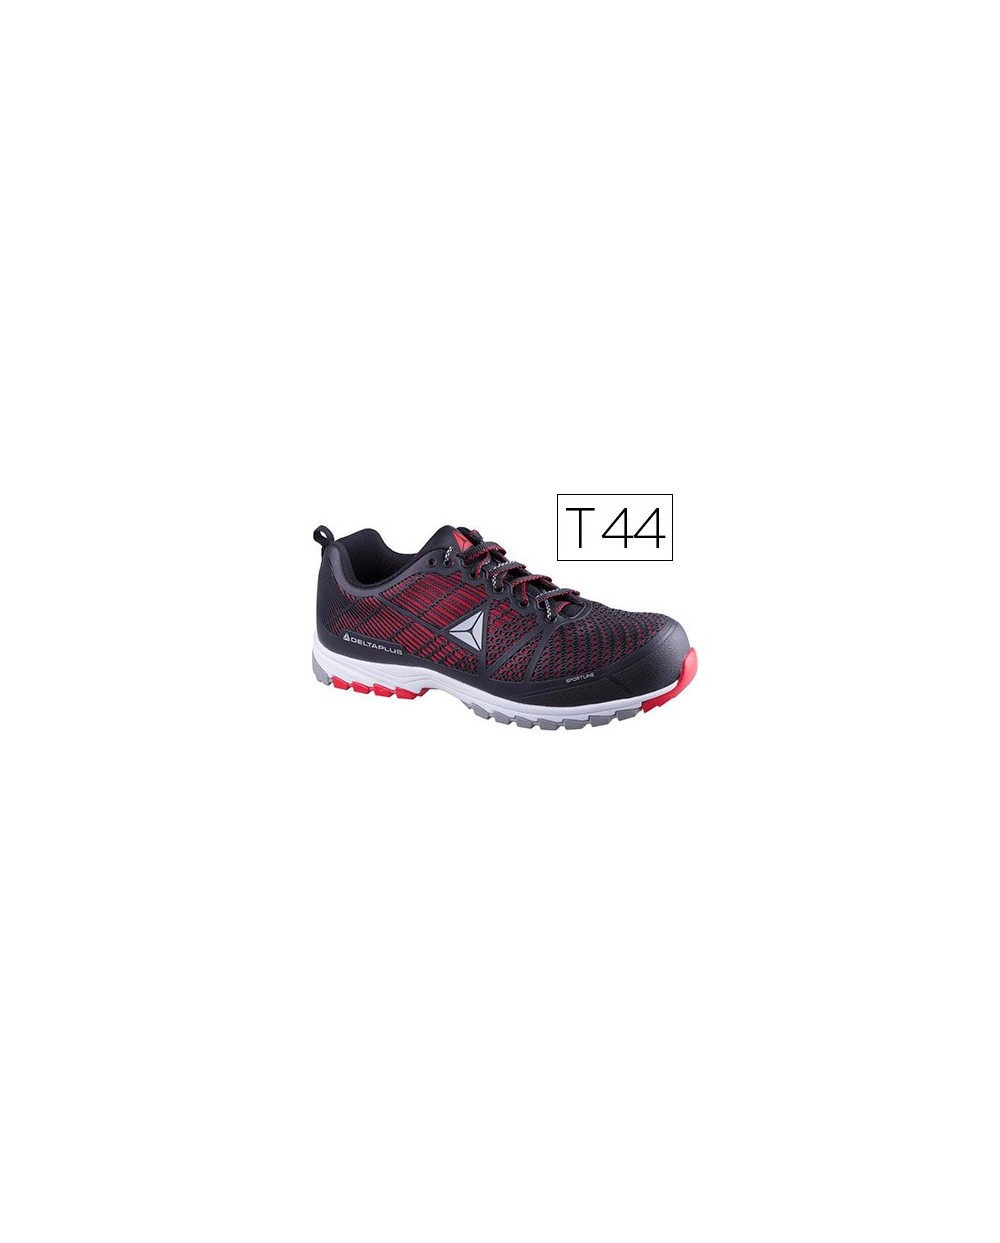 Zapatos de seguridad deltaplus de poliuretano y malla aireada s1p negro y rojo talla 44